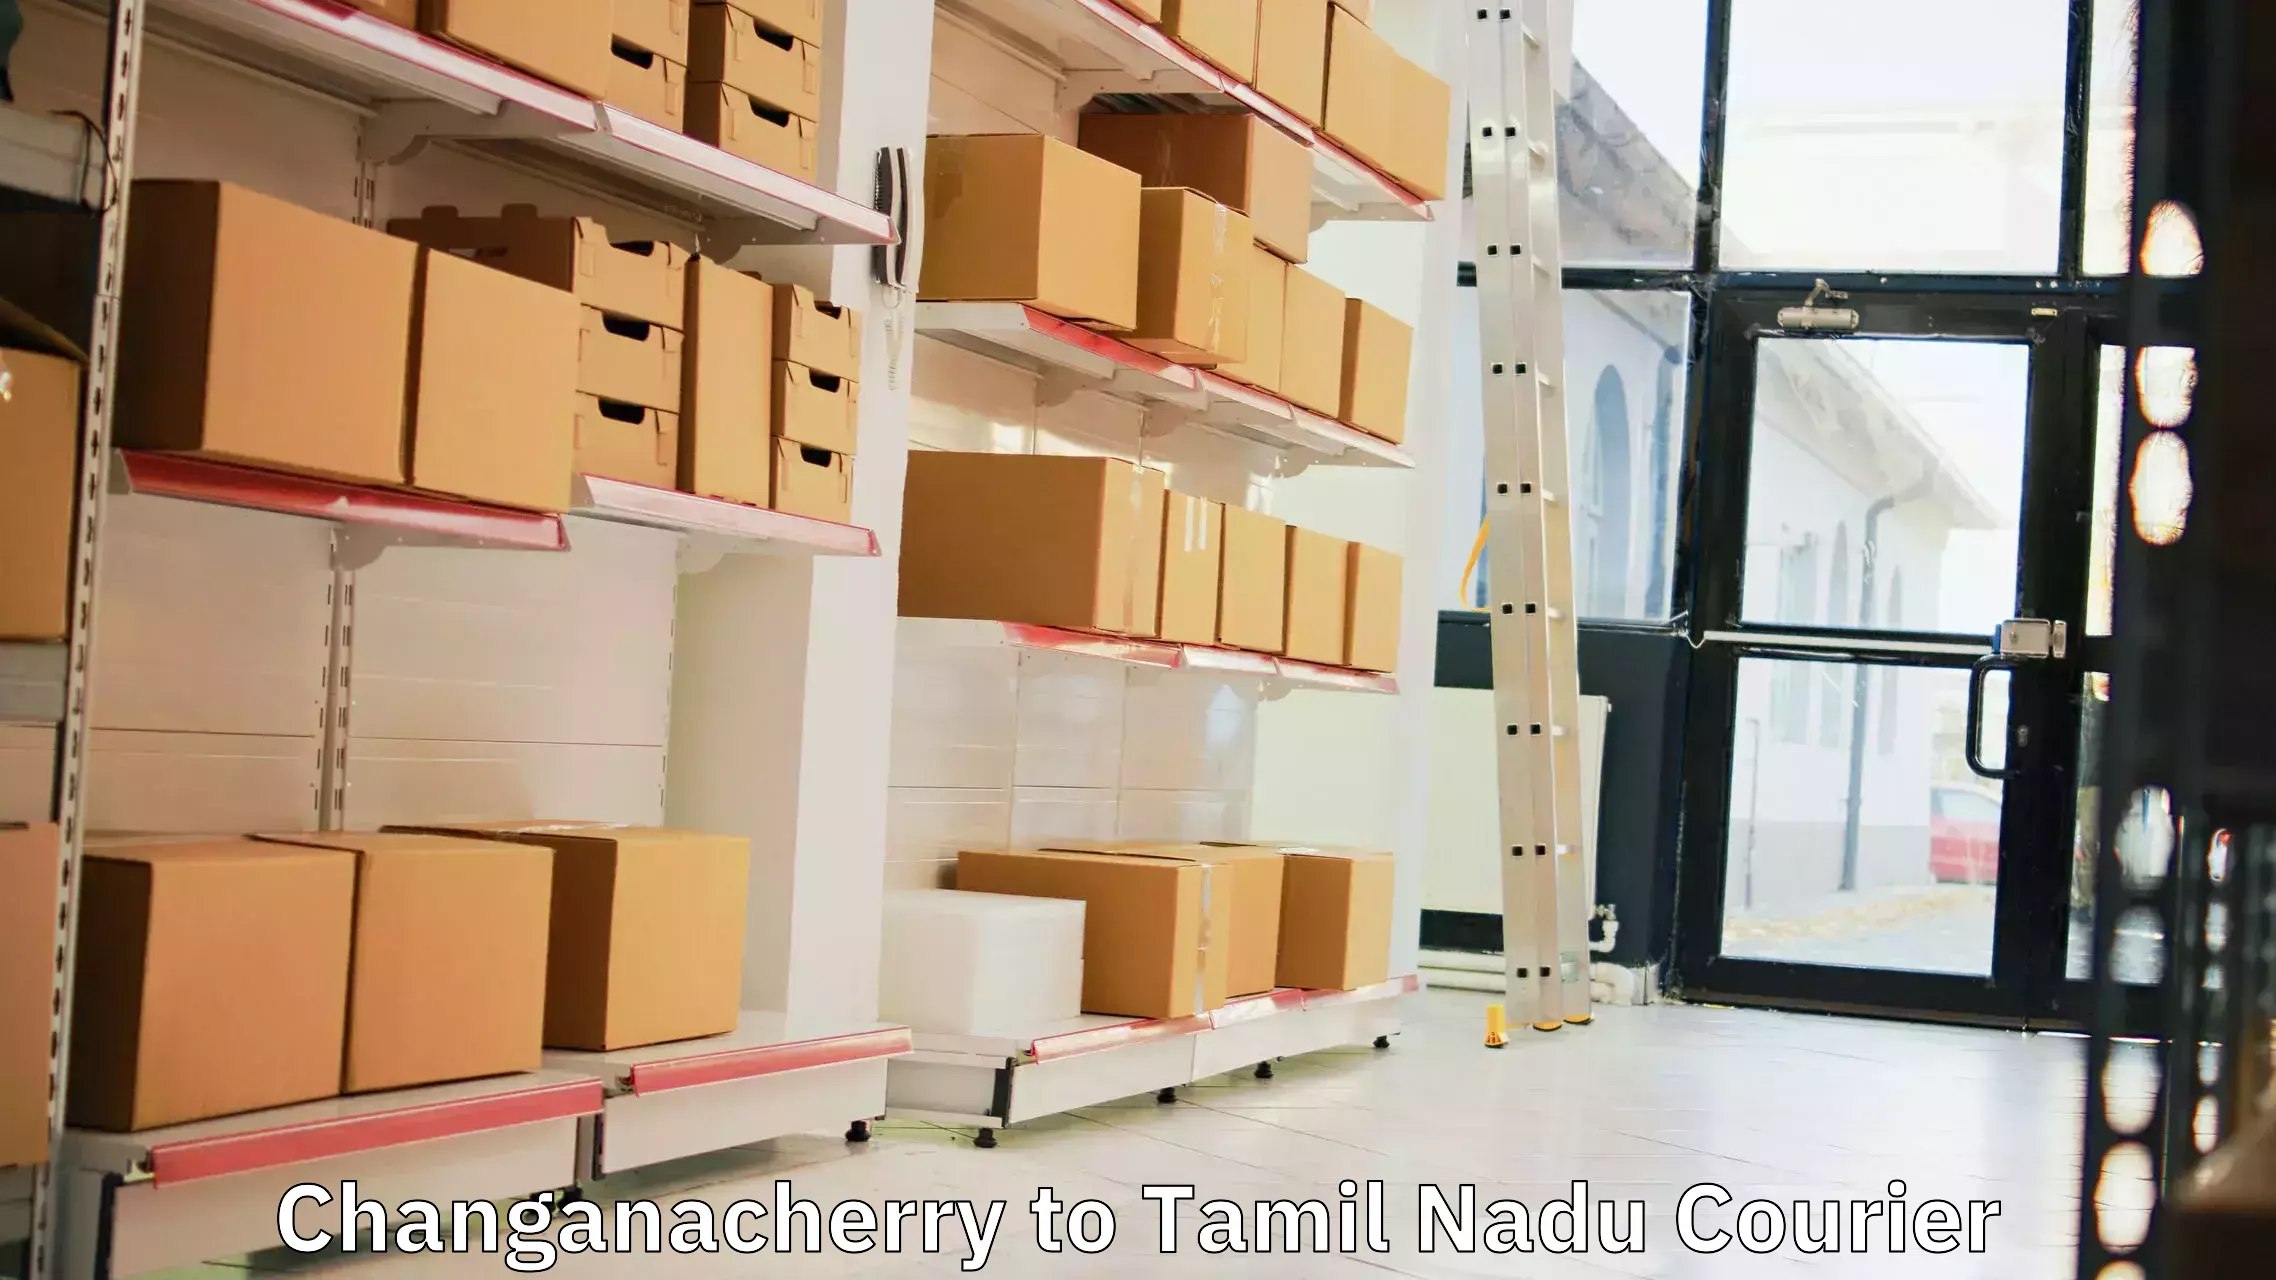 Expedited shipping methods Changanacherry to Tindivanam